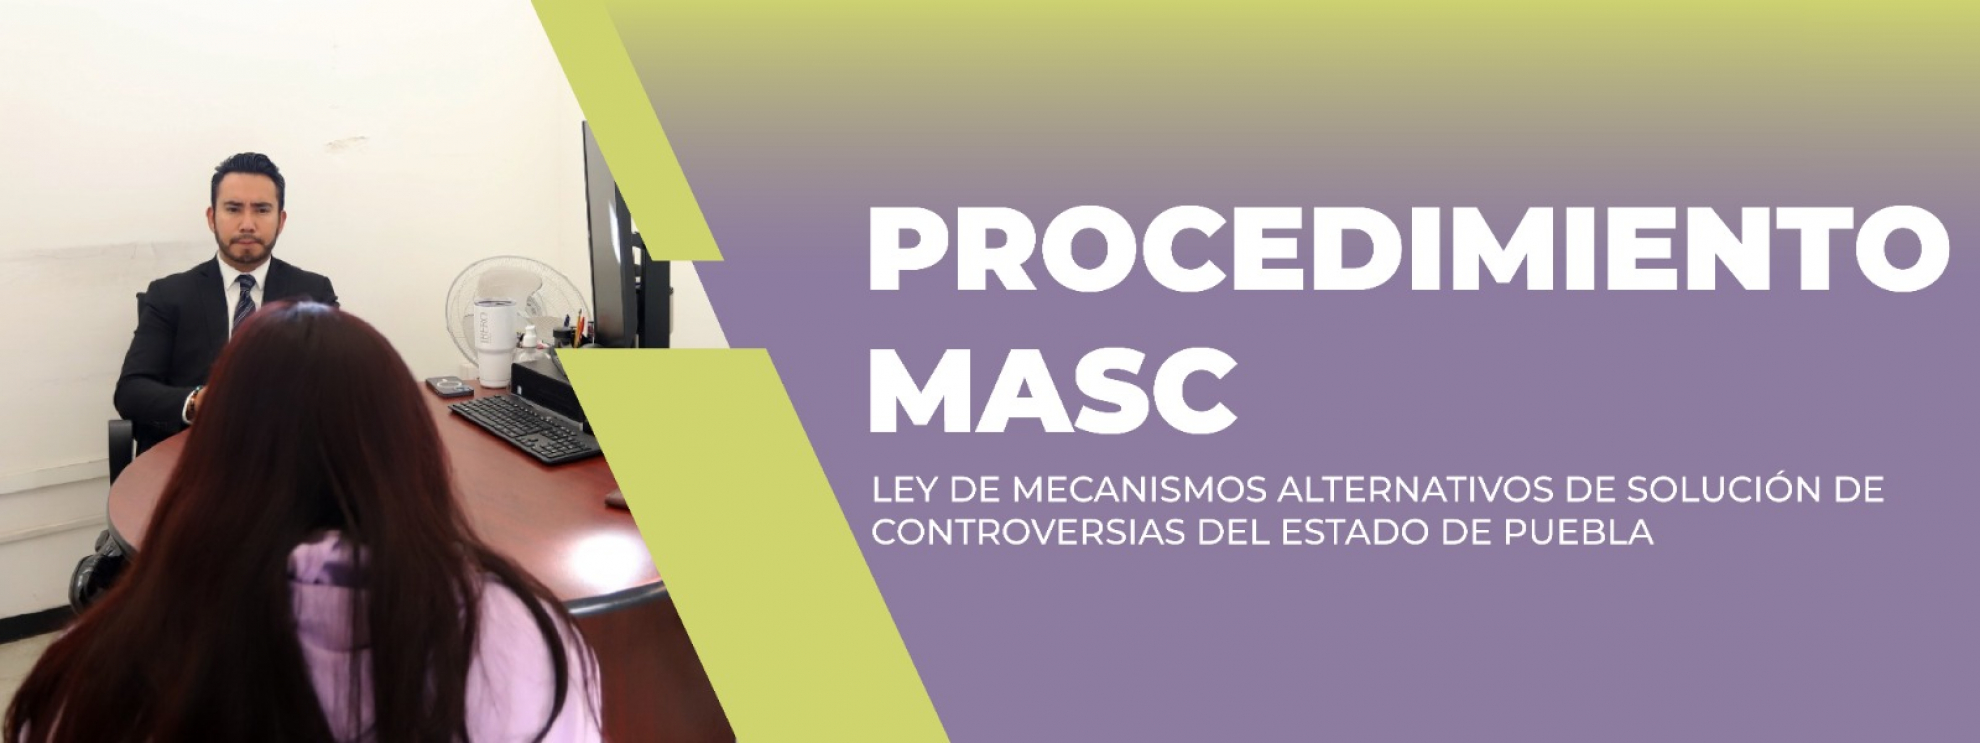 Procedimiento MASC